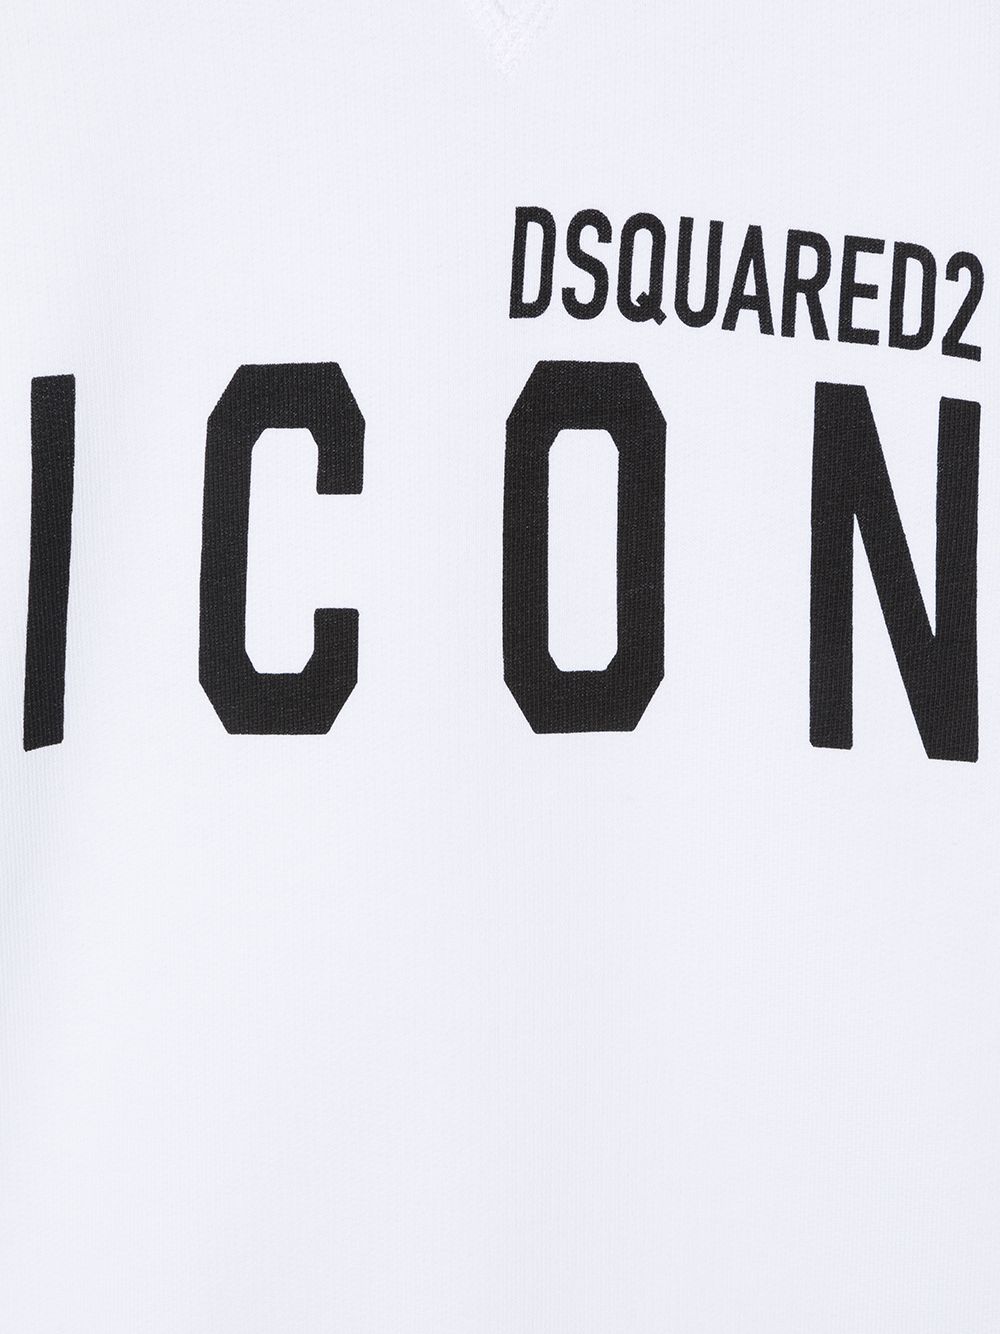 White sweatshirt for boys with ICON logo